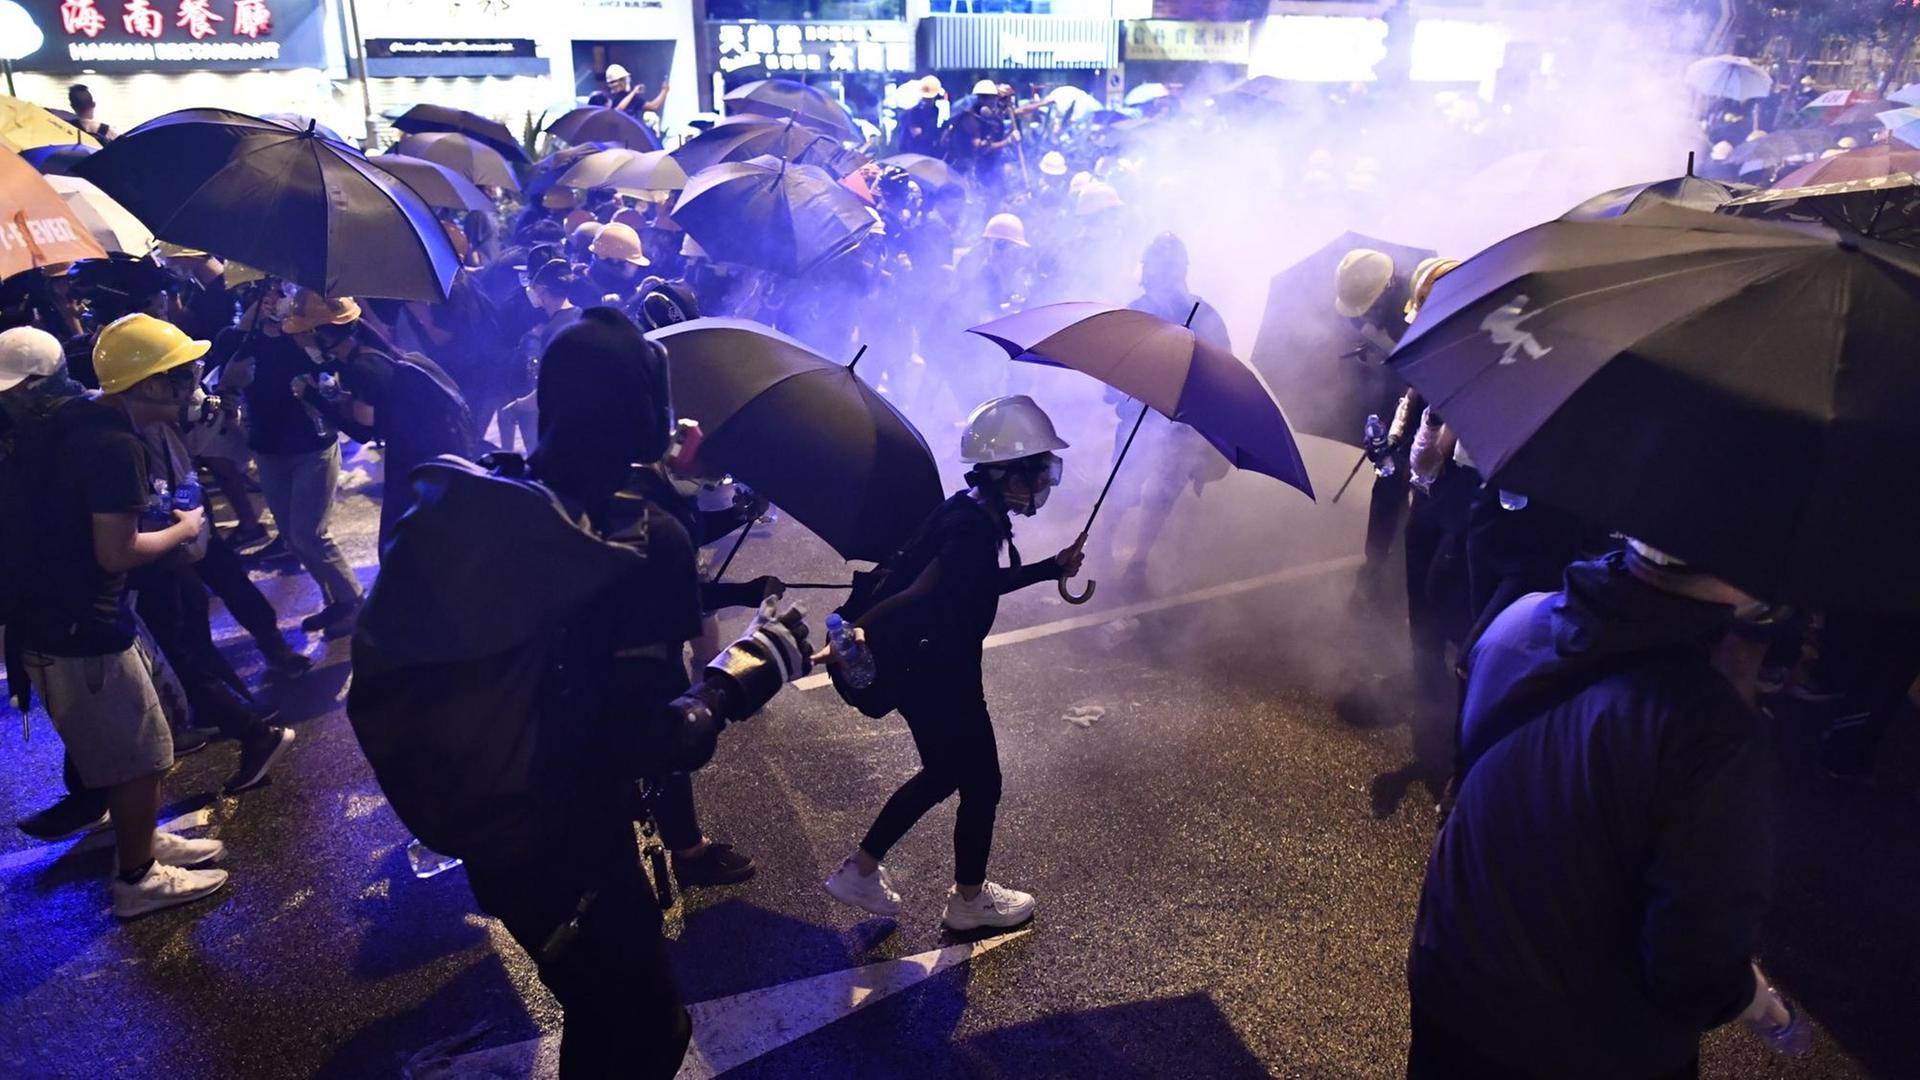 Eskalation in Hongkong: Mit Regenschirmen und Gasmasken versuchen sich die Demonstranten vor dem Tränengas der Polizei zu schützen.